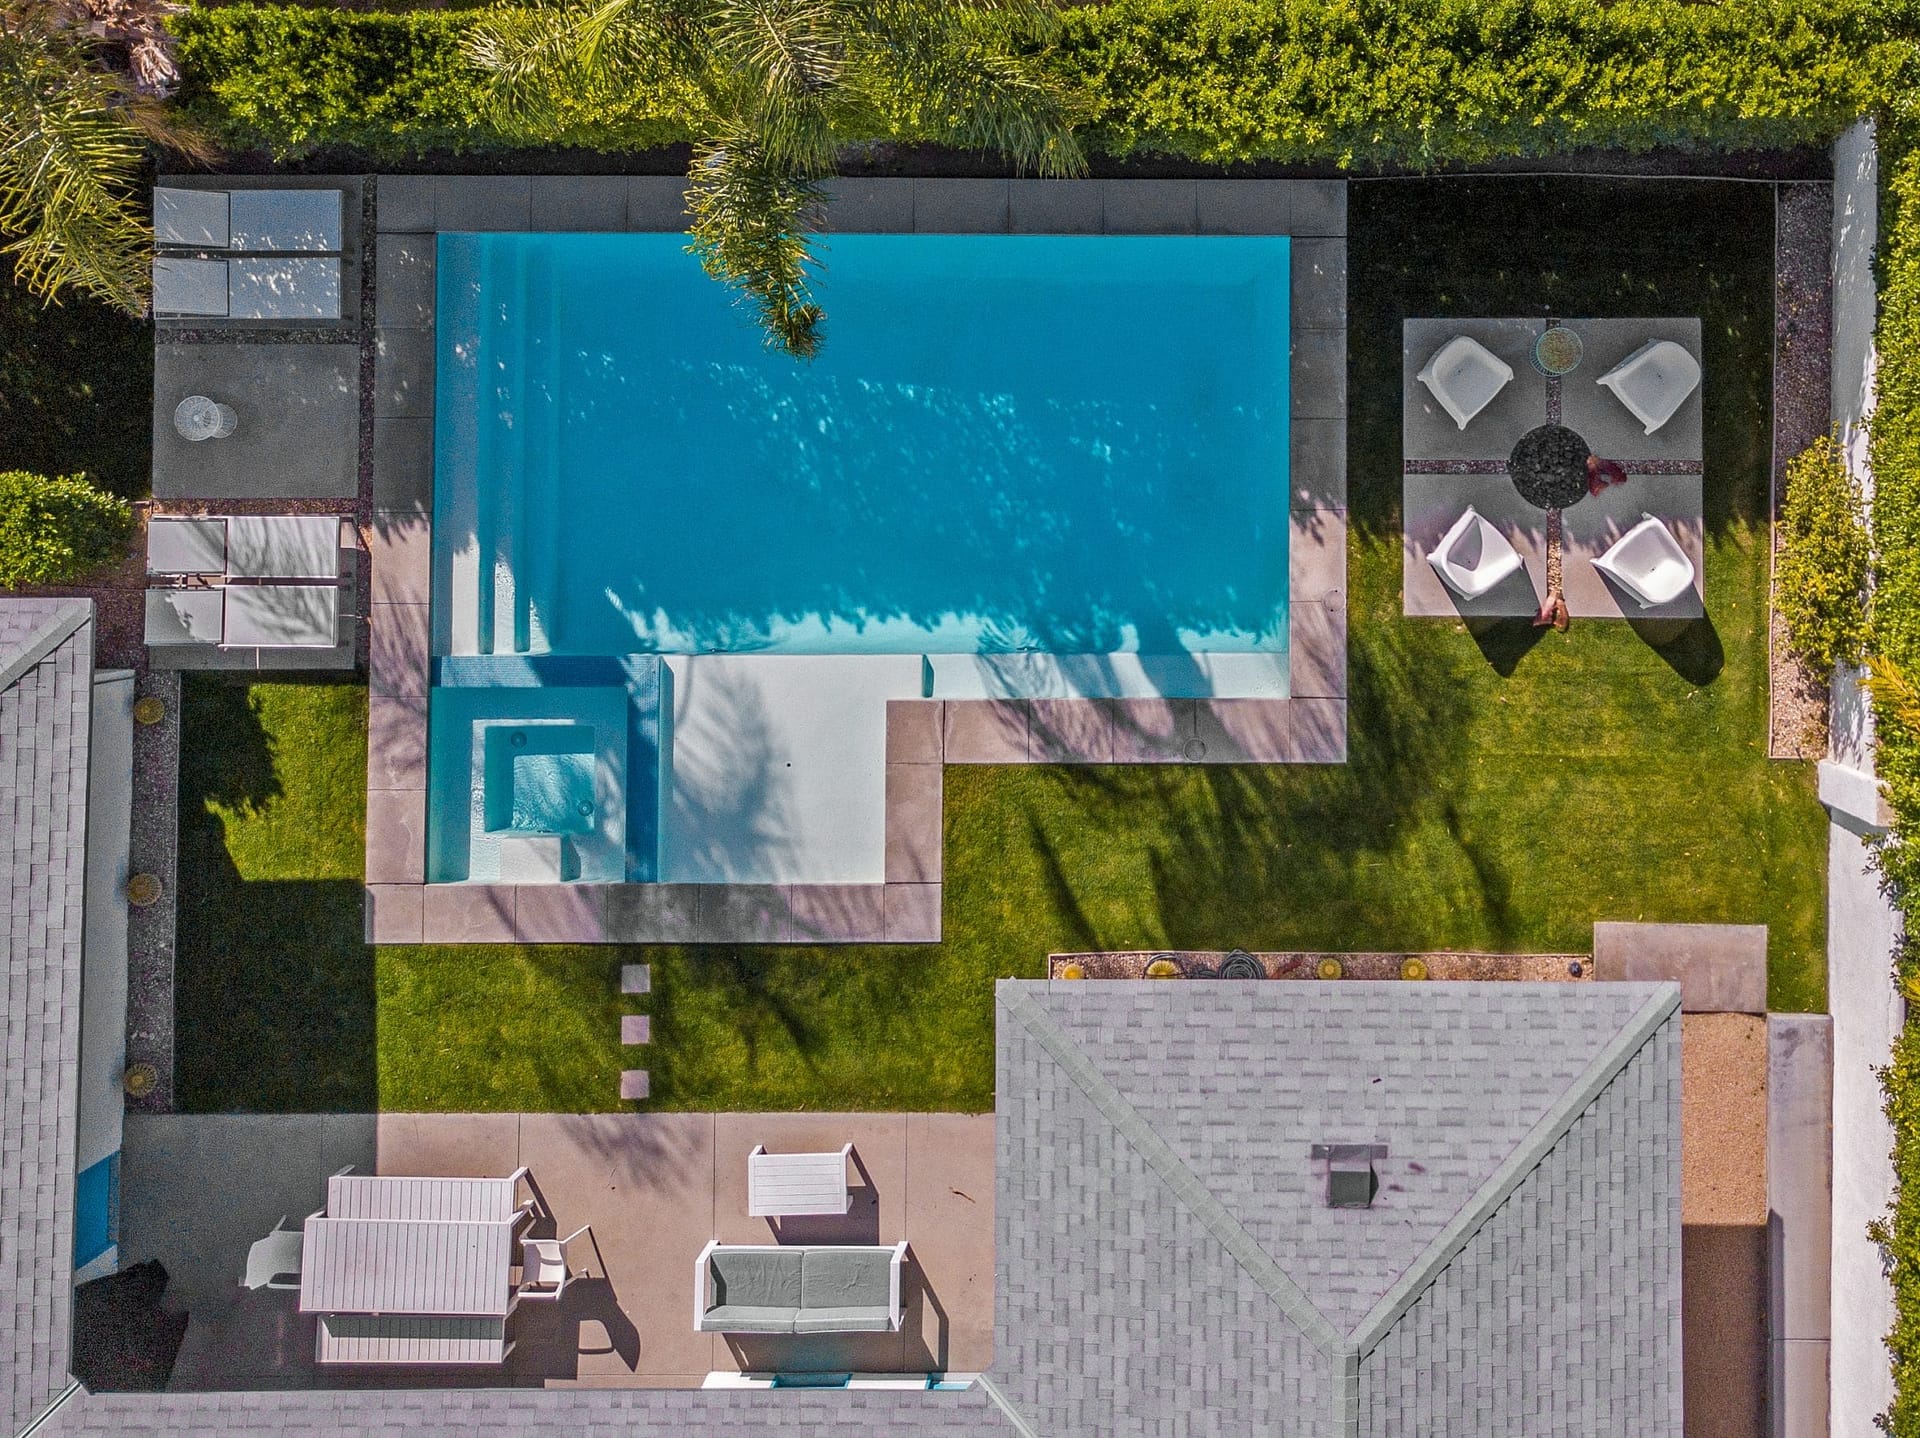 beautiful-drone-photo-of-pool-in-backyard-2021-09-03-05-33-17-utc